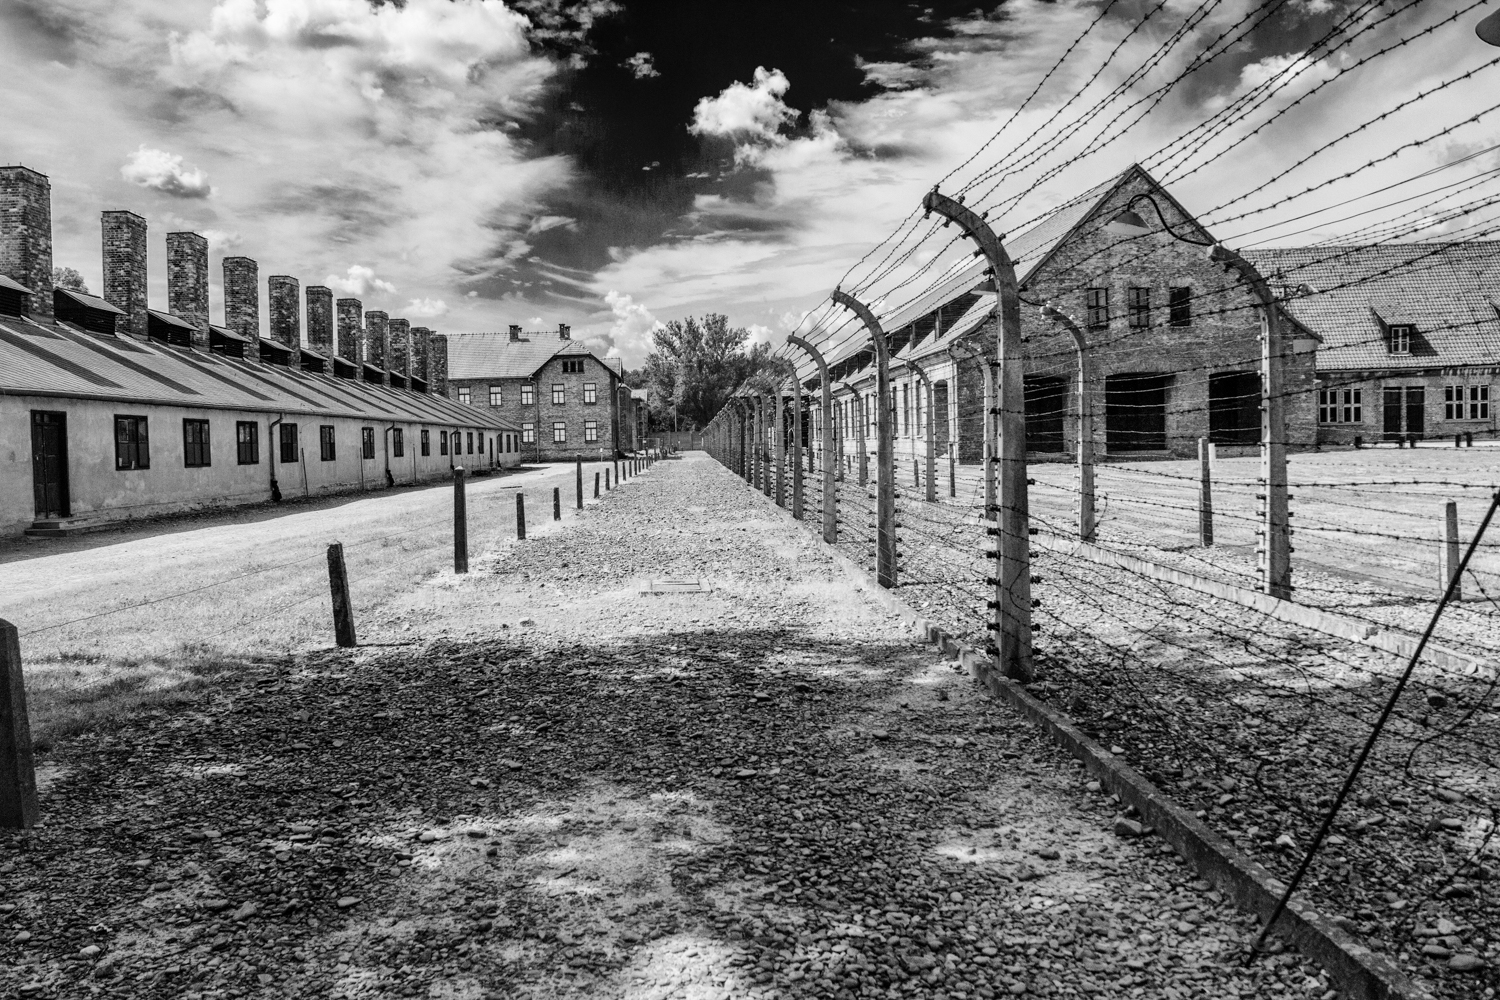 Concentration camp. Освенцим концентрационный лагерь Аушвиц. Аушвиц Бухенвальд концлагерь. Концентрационный лагерь Аушвиц-Биркенау Освенцим. Лагеря смерти Аушвиц Освенцим.